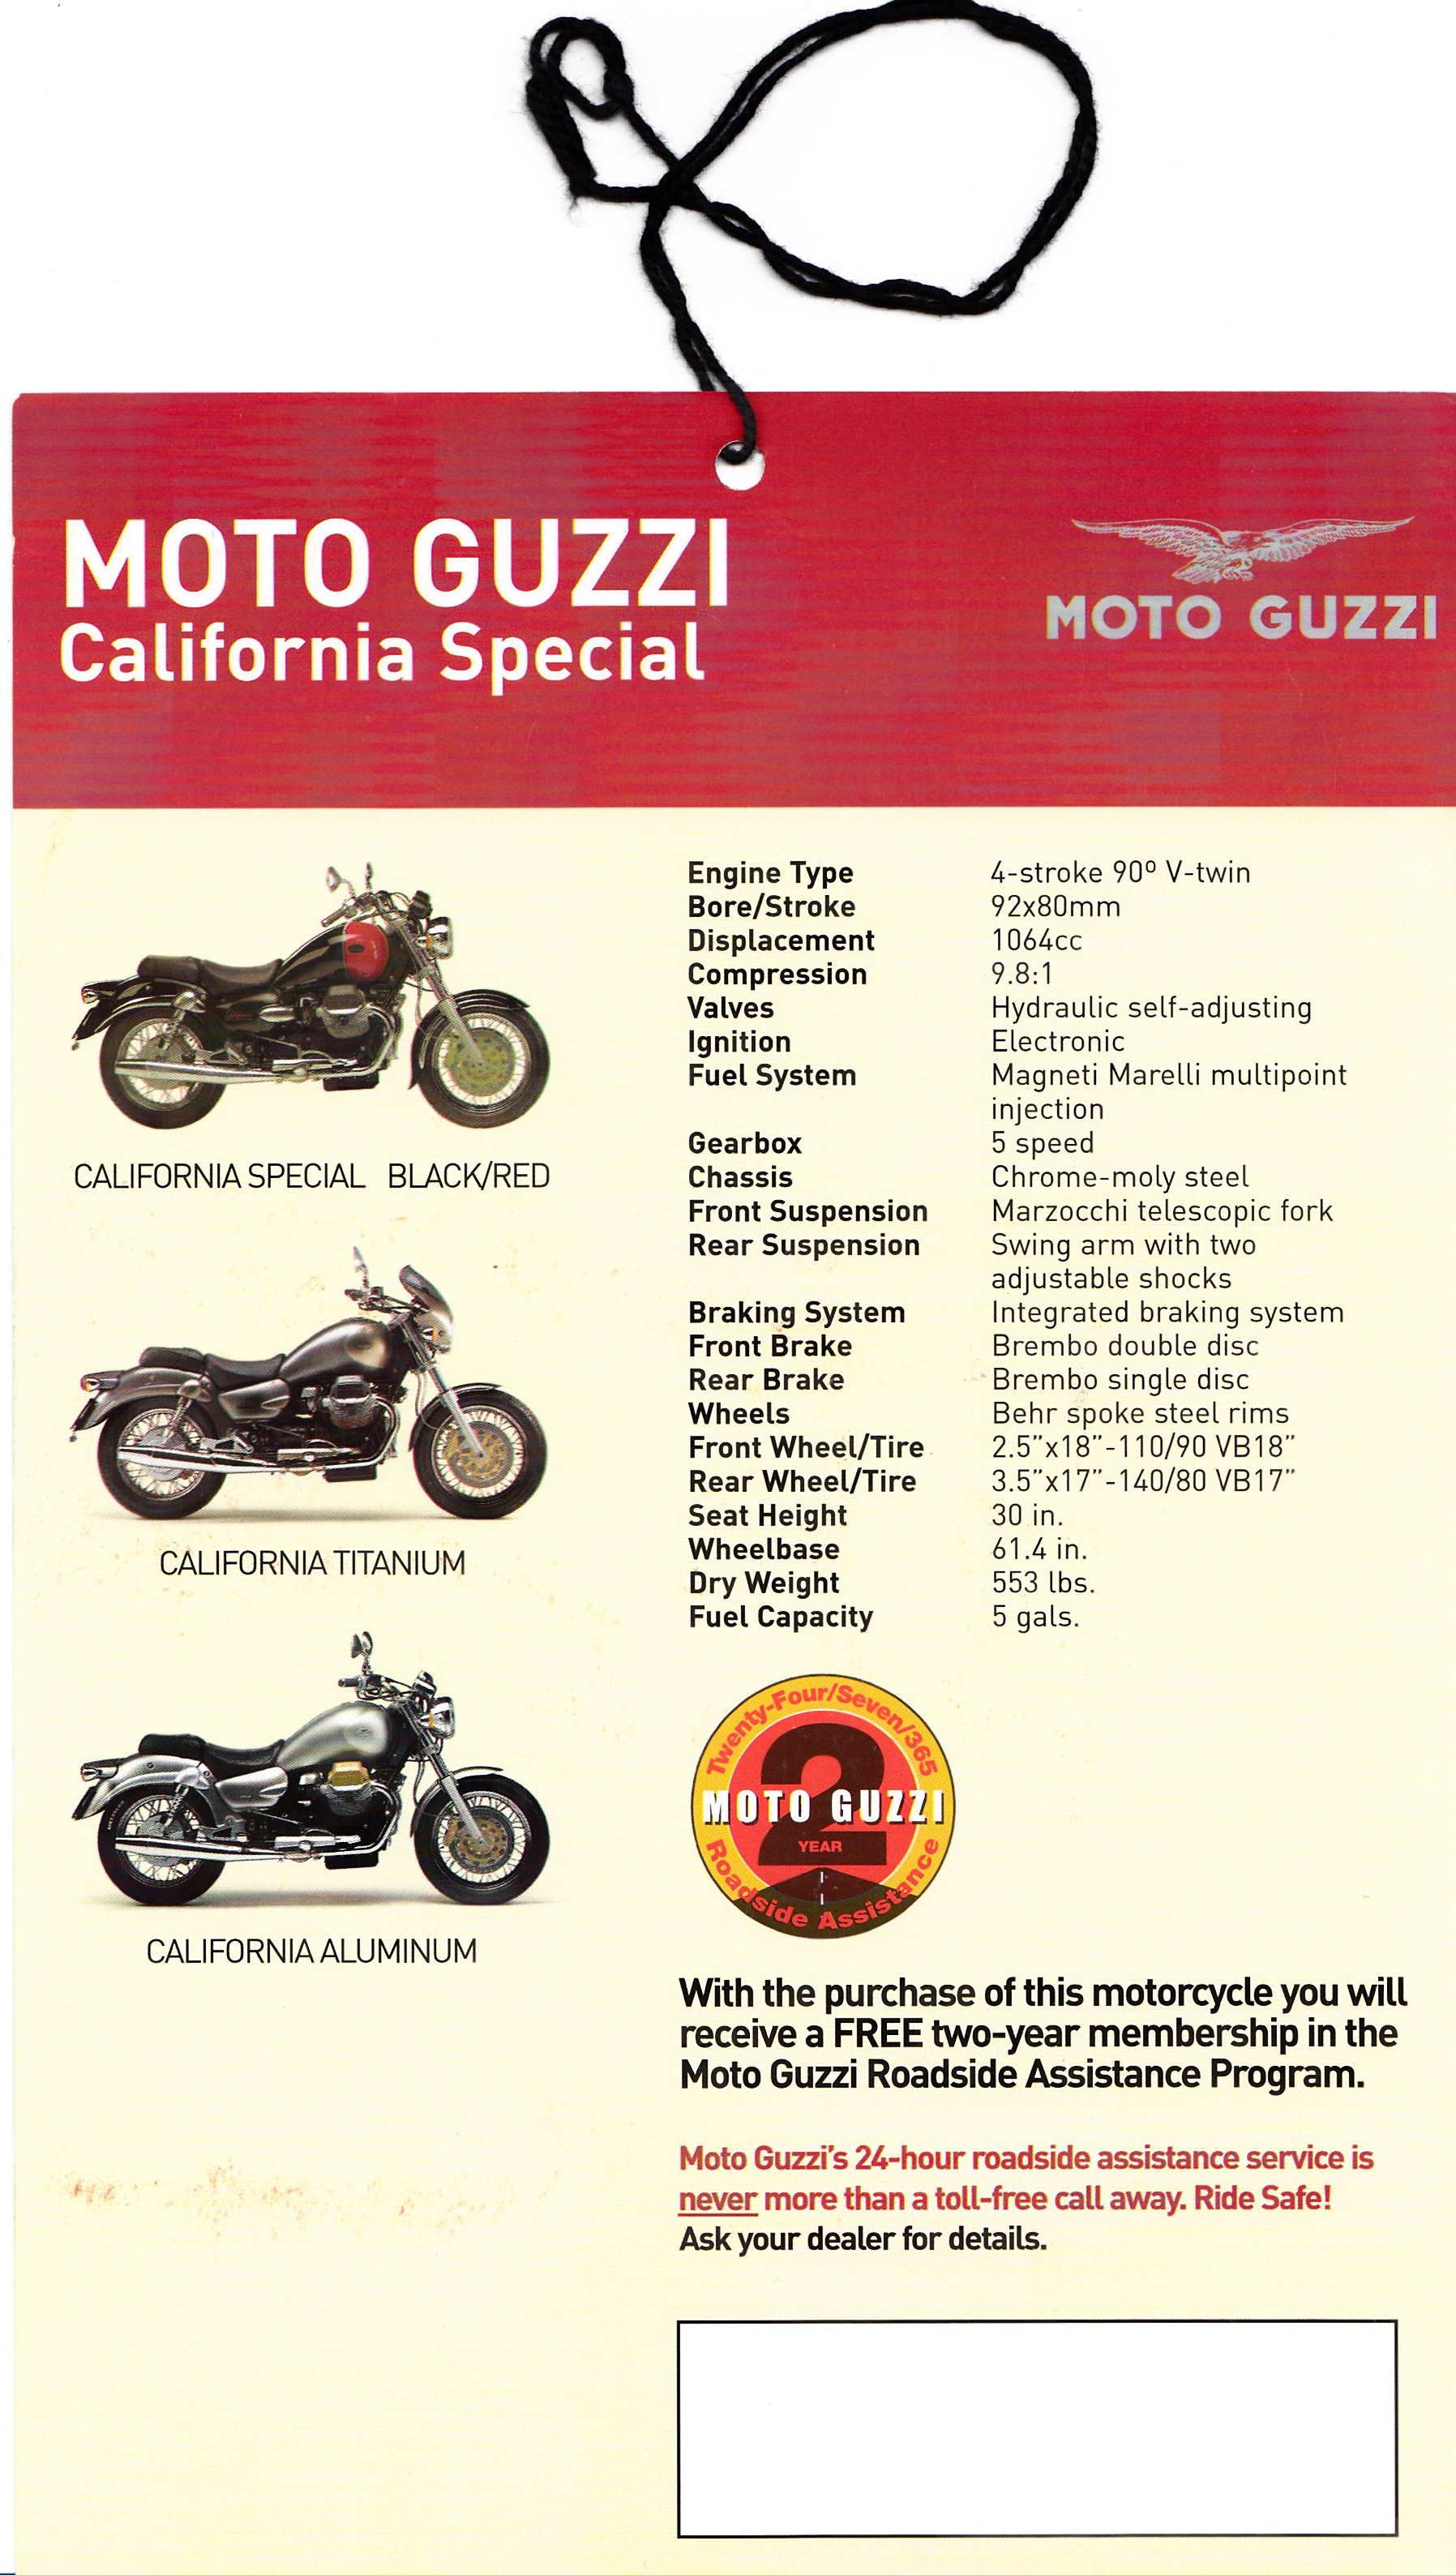 Tag - Moto Guzzi California Special